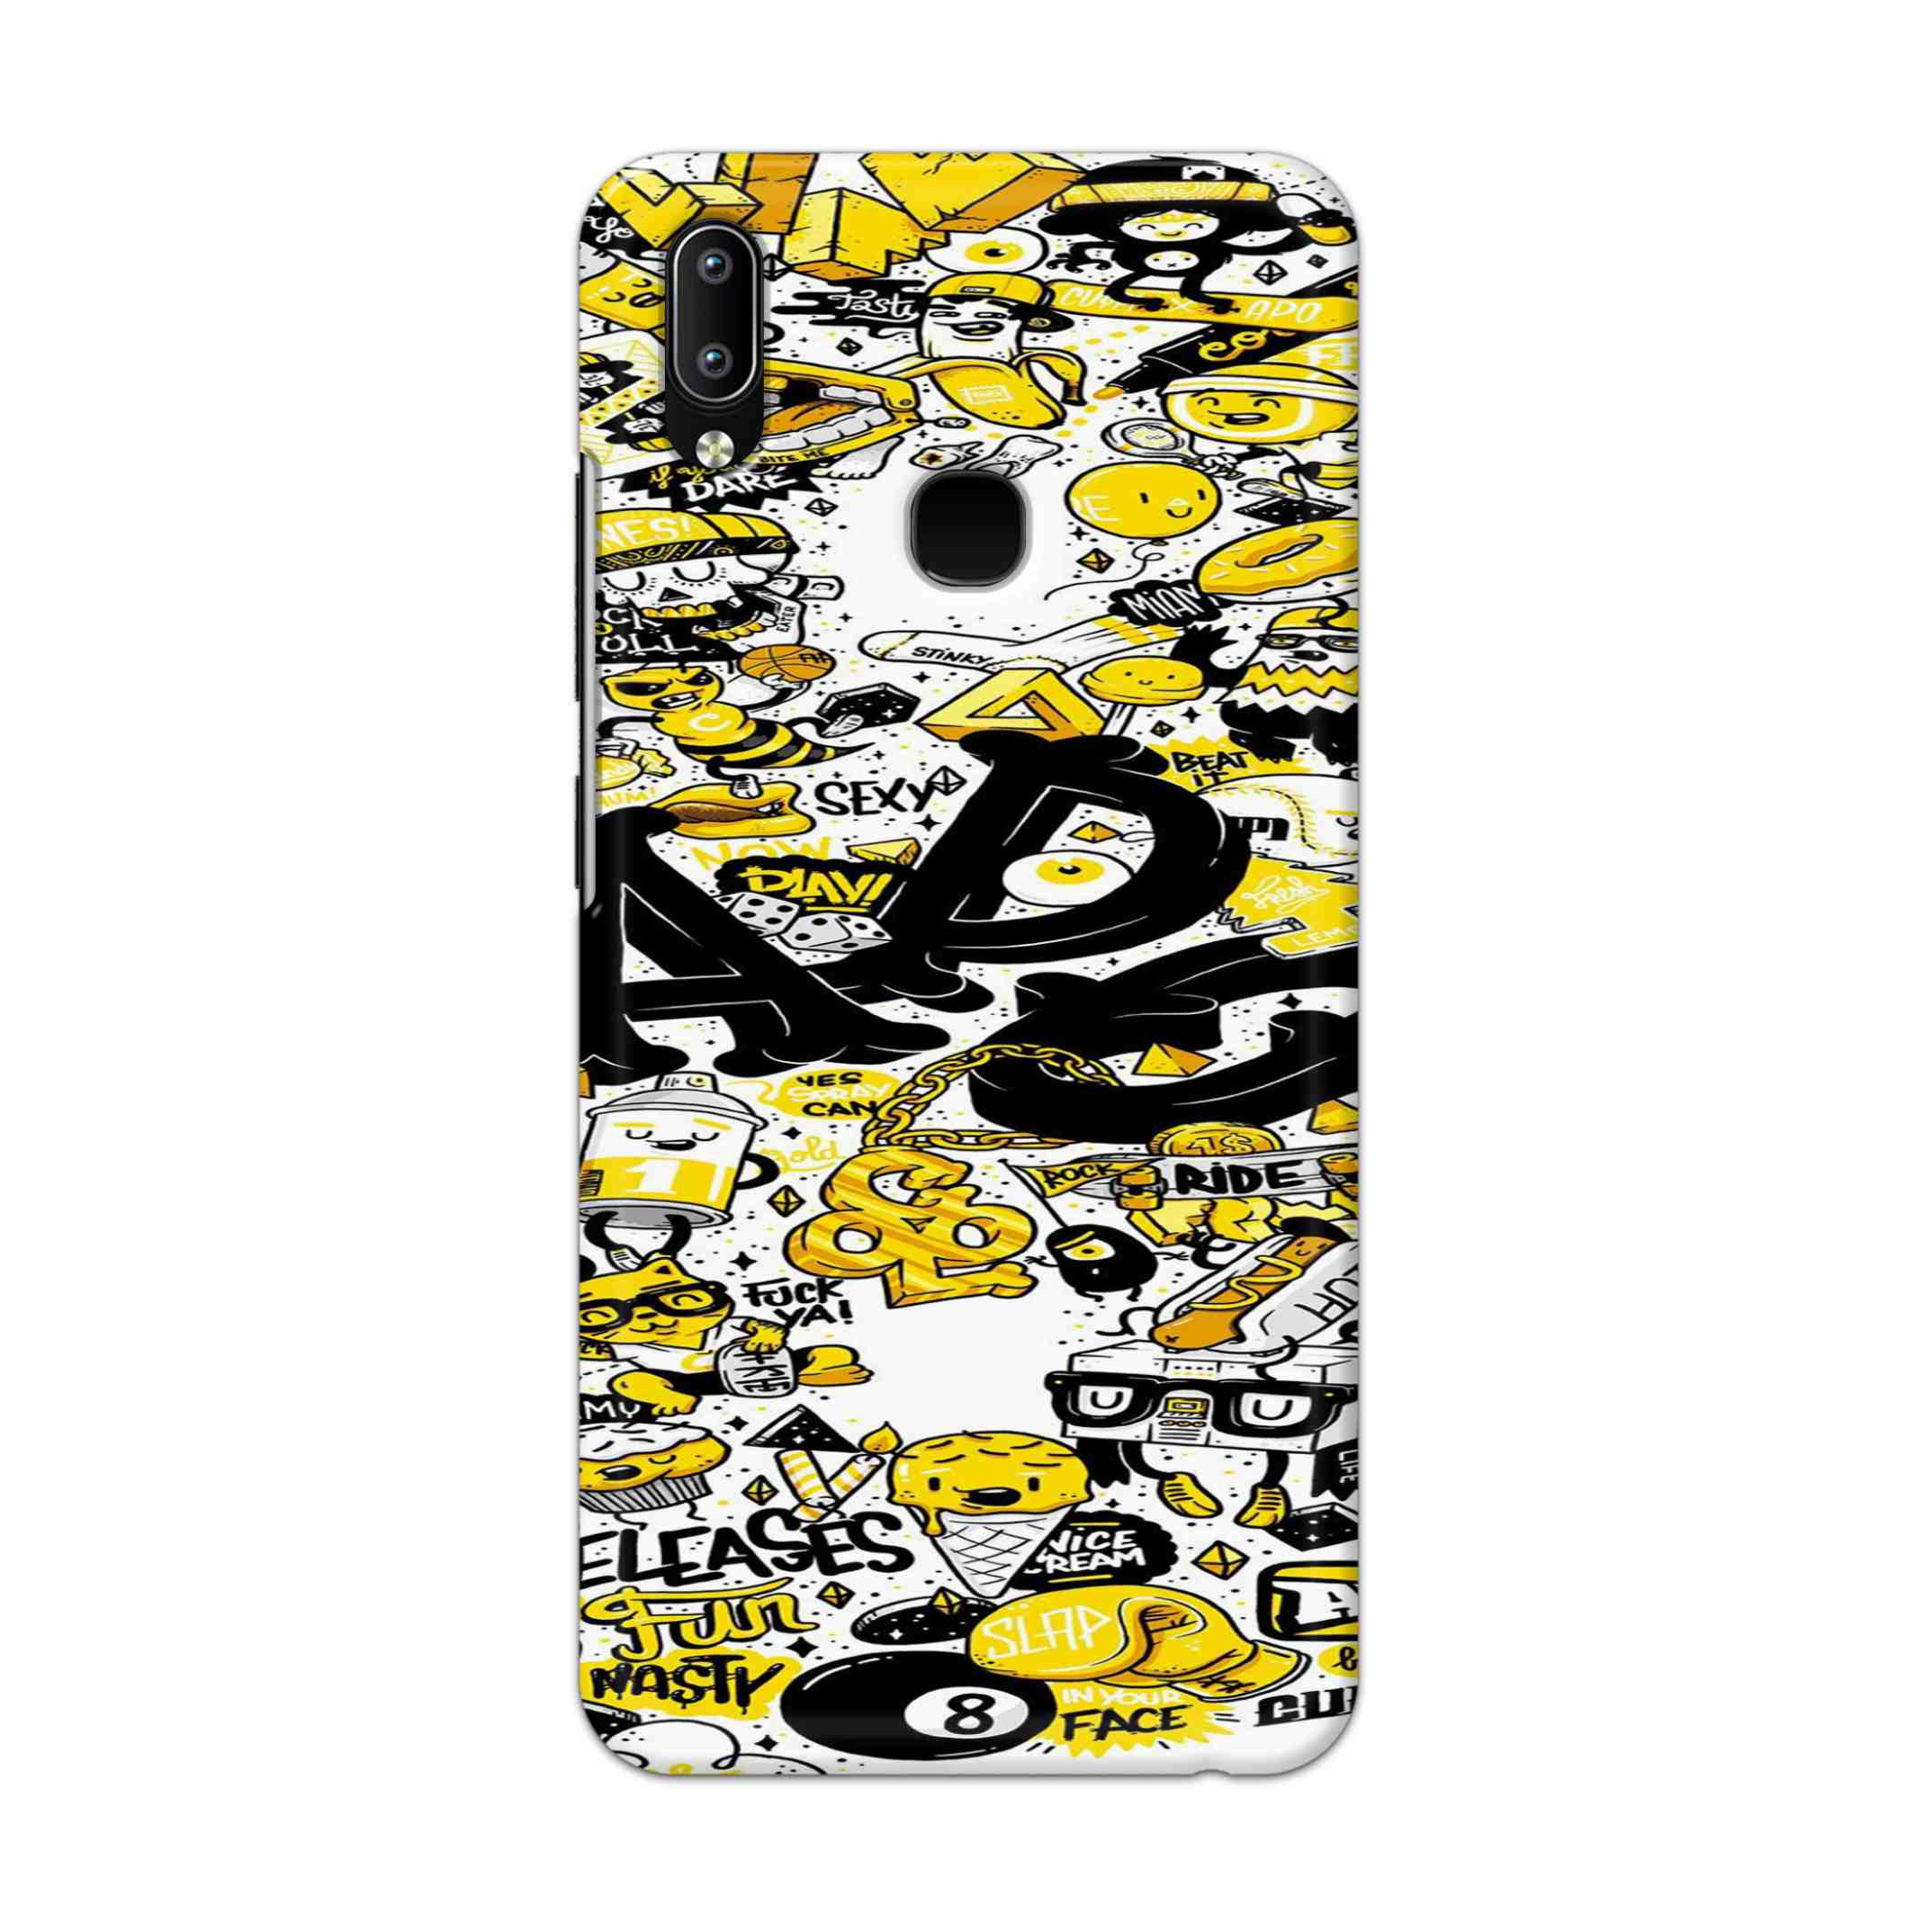 Buy Ado Hard Back Mobile Phone Case Cover For Vivo Y95 / Y93 / Y91 Online